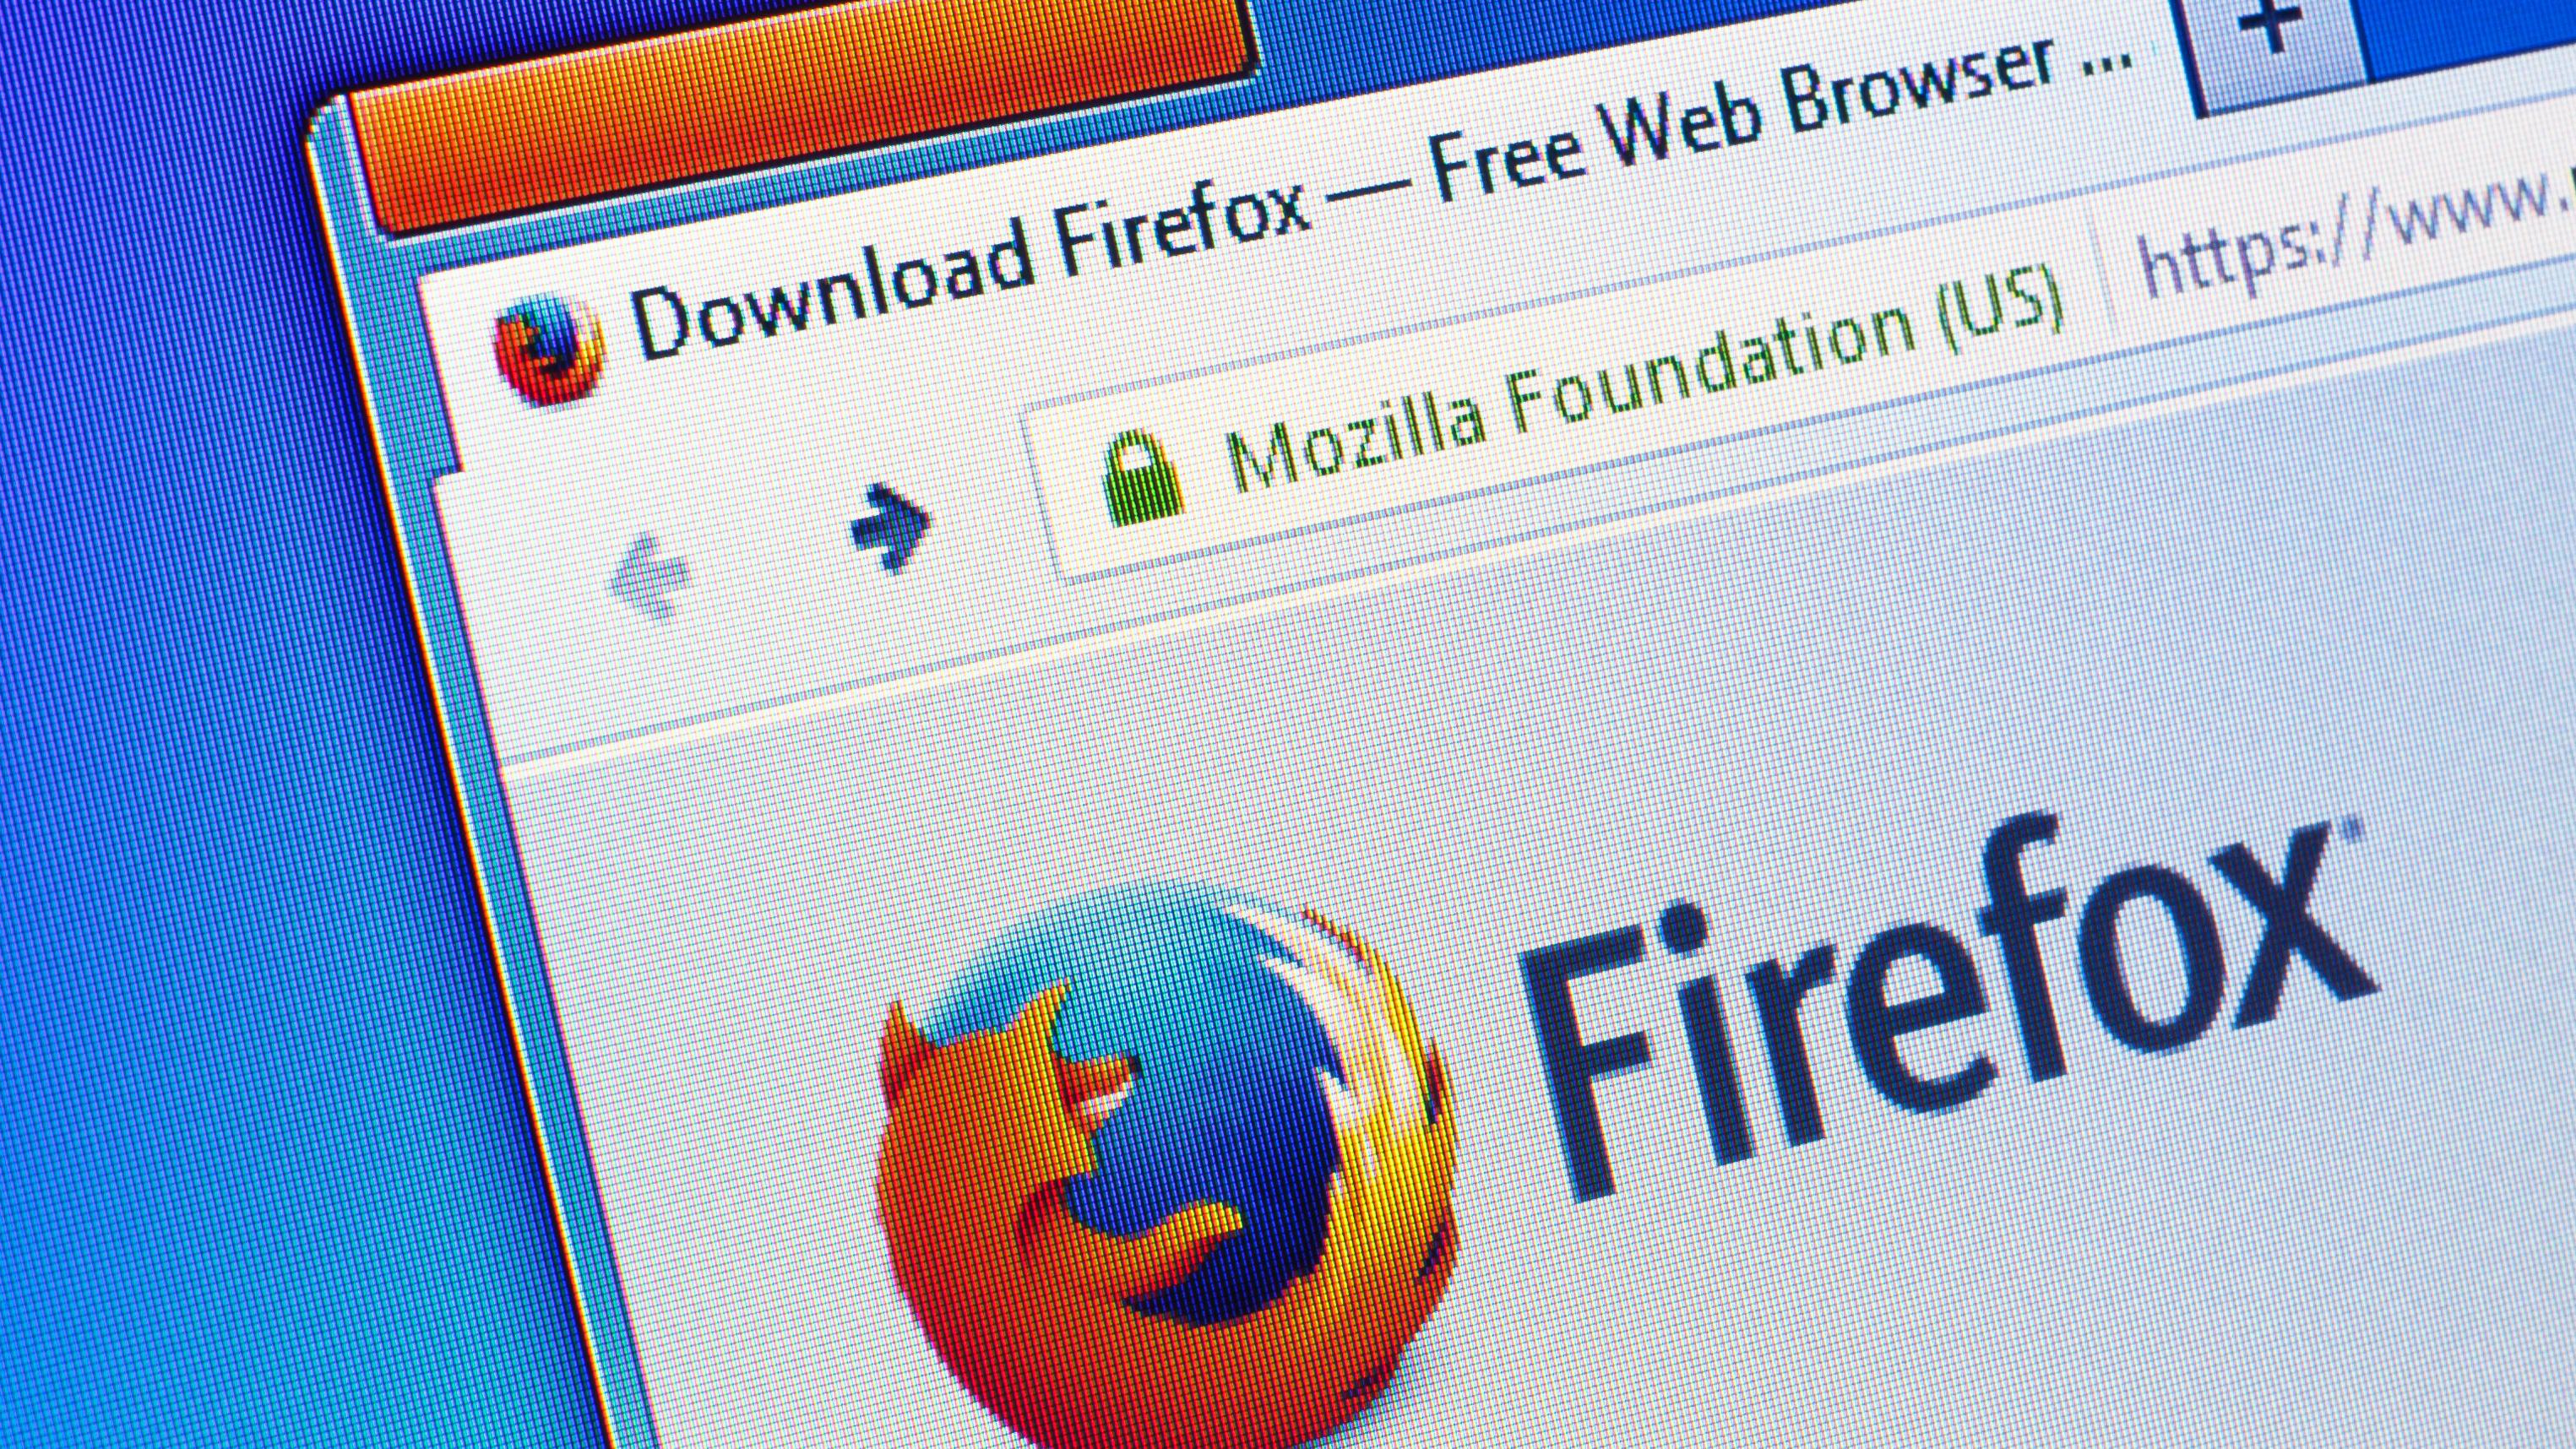 Snart kan du surfe mer anonymt med Firefox